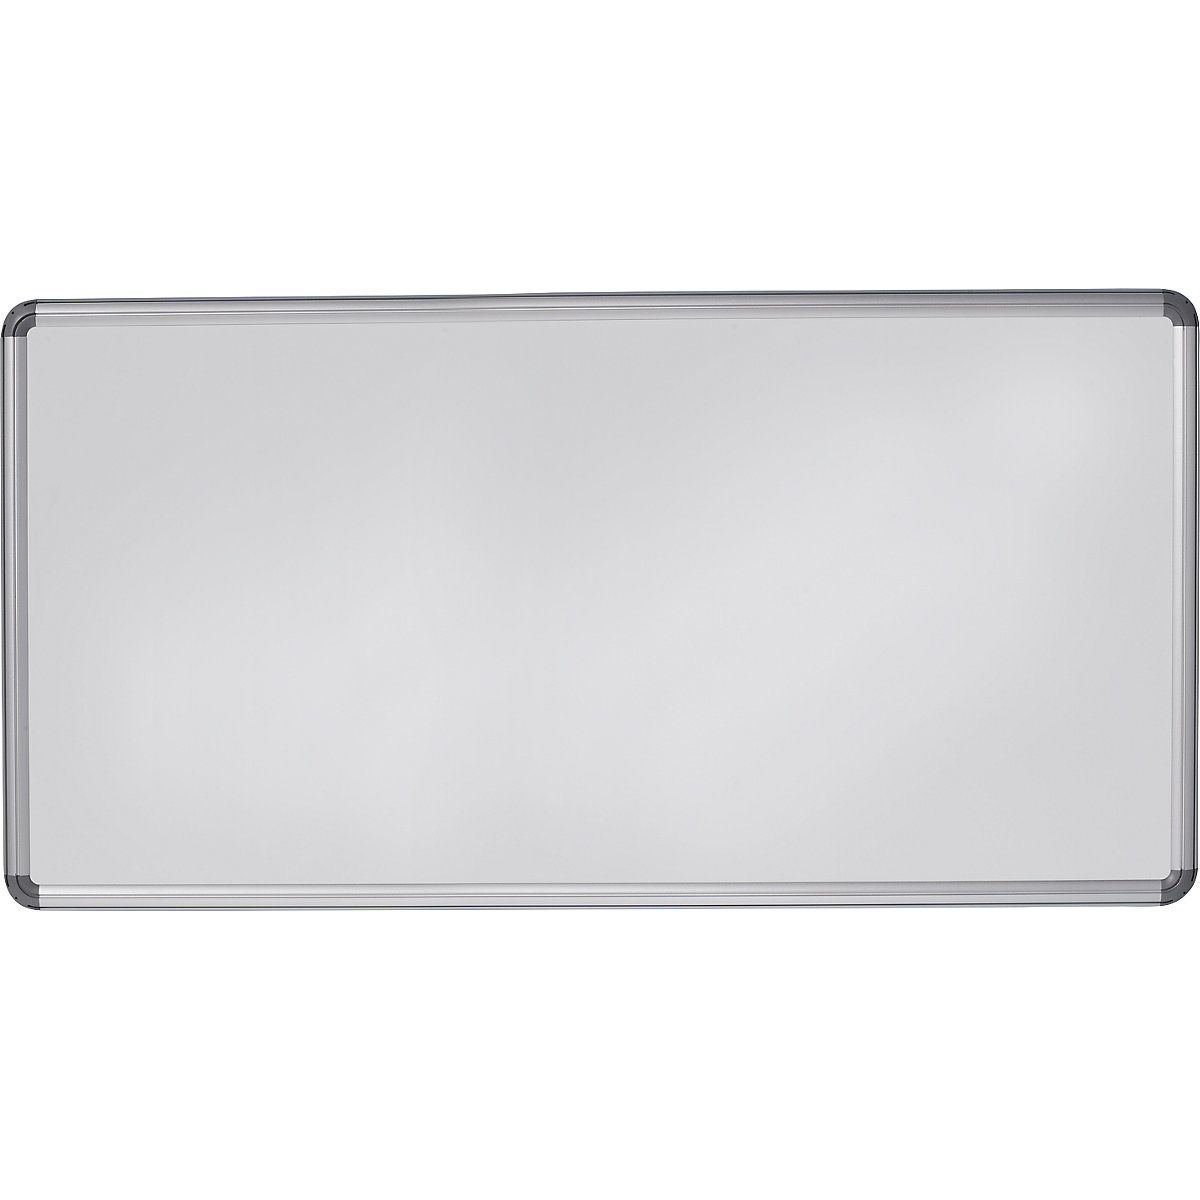 Elegantní nástěnná tabule – eurokraft pro, ocelový plech, lakováno, š x v 2400 x 1200 mm, bílá